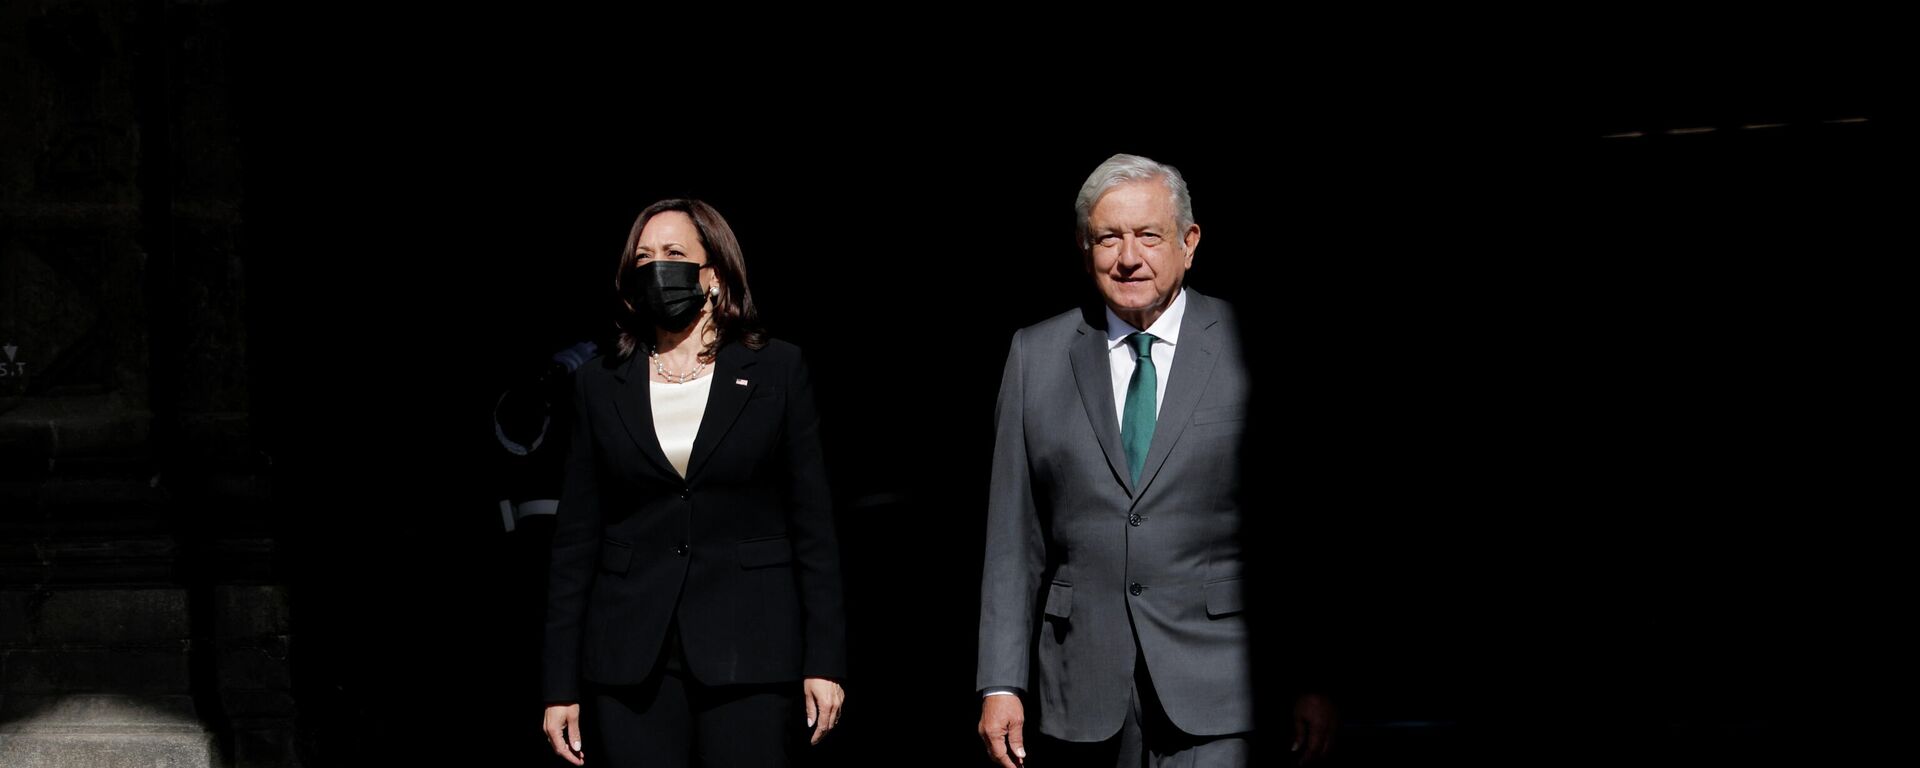 La vicepresidenta de EEUU, Kamala Harris, y el presidente de México, Andrés Manuel López Obrador - Sputnik Mundo, 1920, 09.06.2021